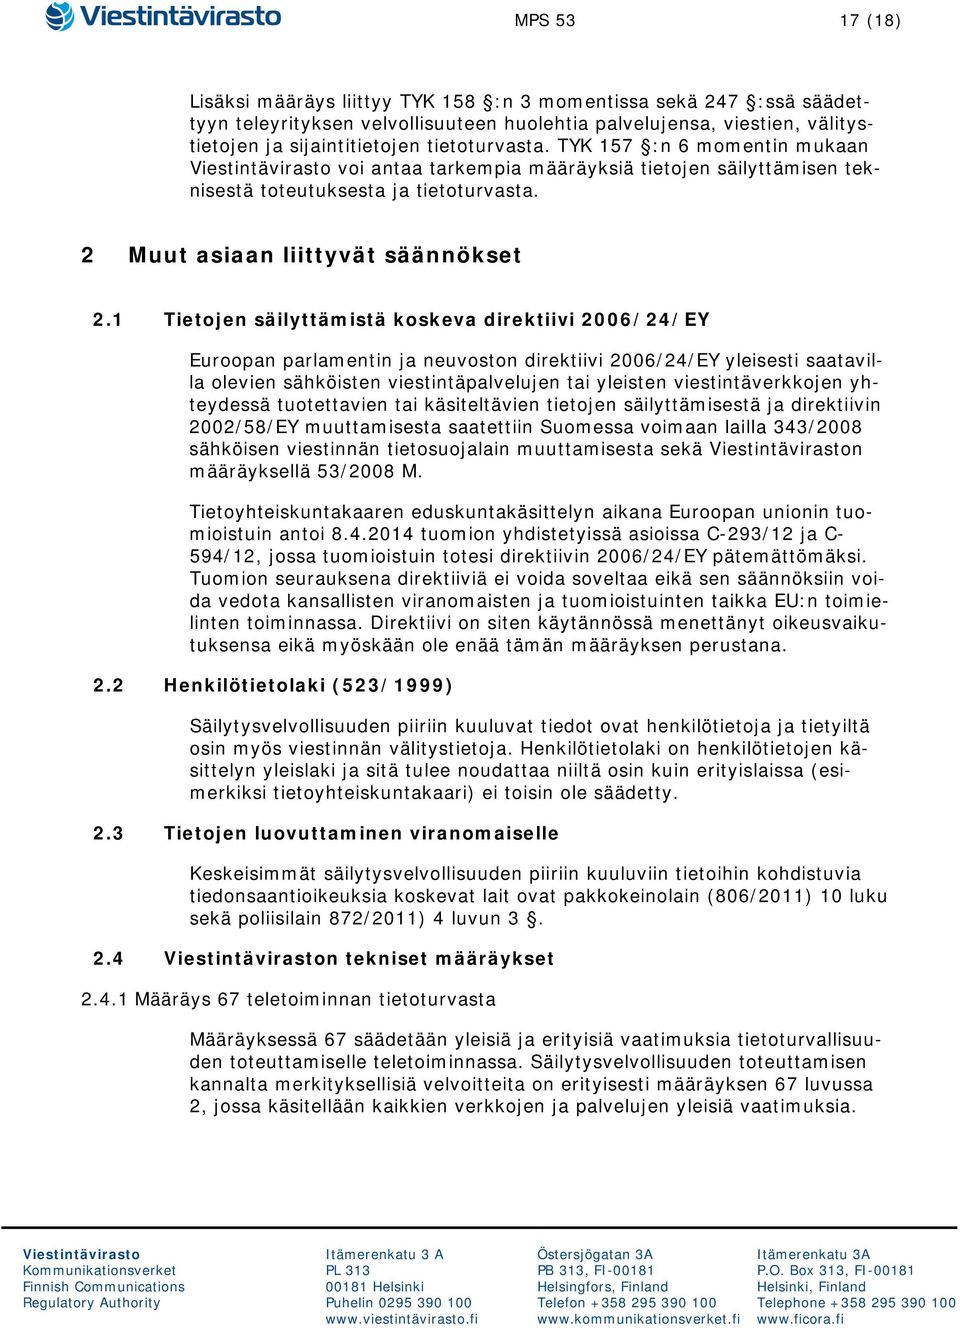 1 Tietojen säilyttämistä koskeva direktiivi 2006/24/EY Euroopan parlamentin ja neuvoston direktiivi 2006/24/EY yleisesti saatavilla olevien sähköisten viestintäpalvelujen tai yleisten